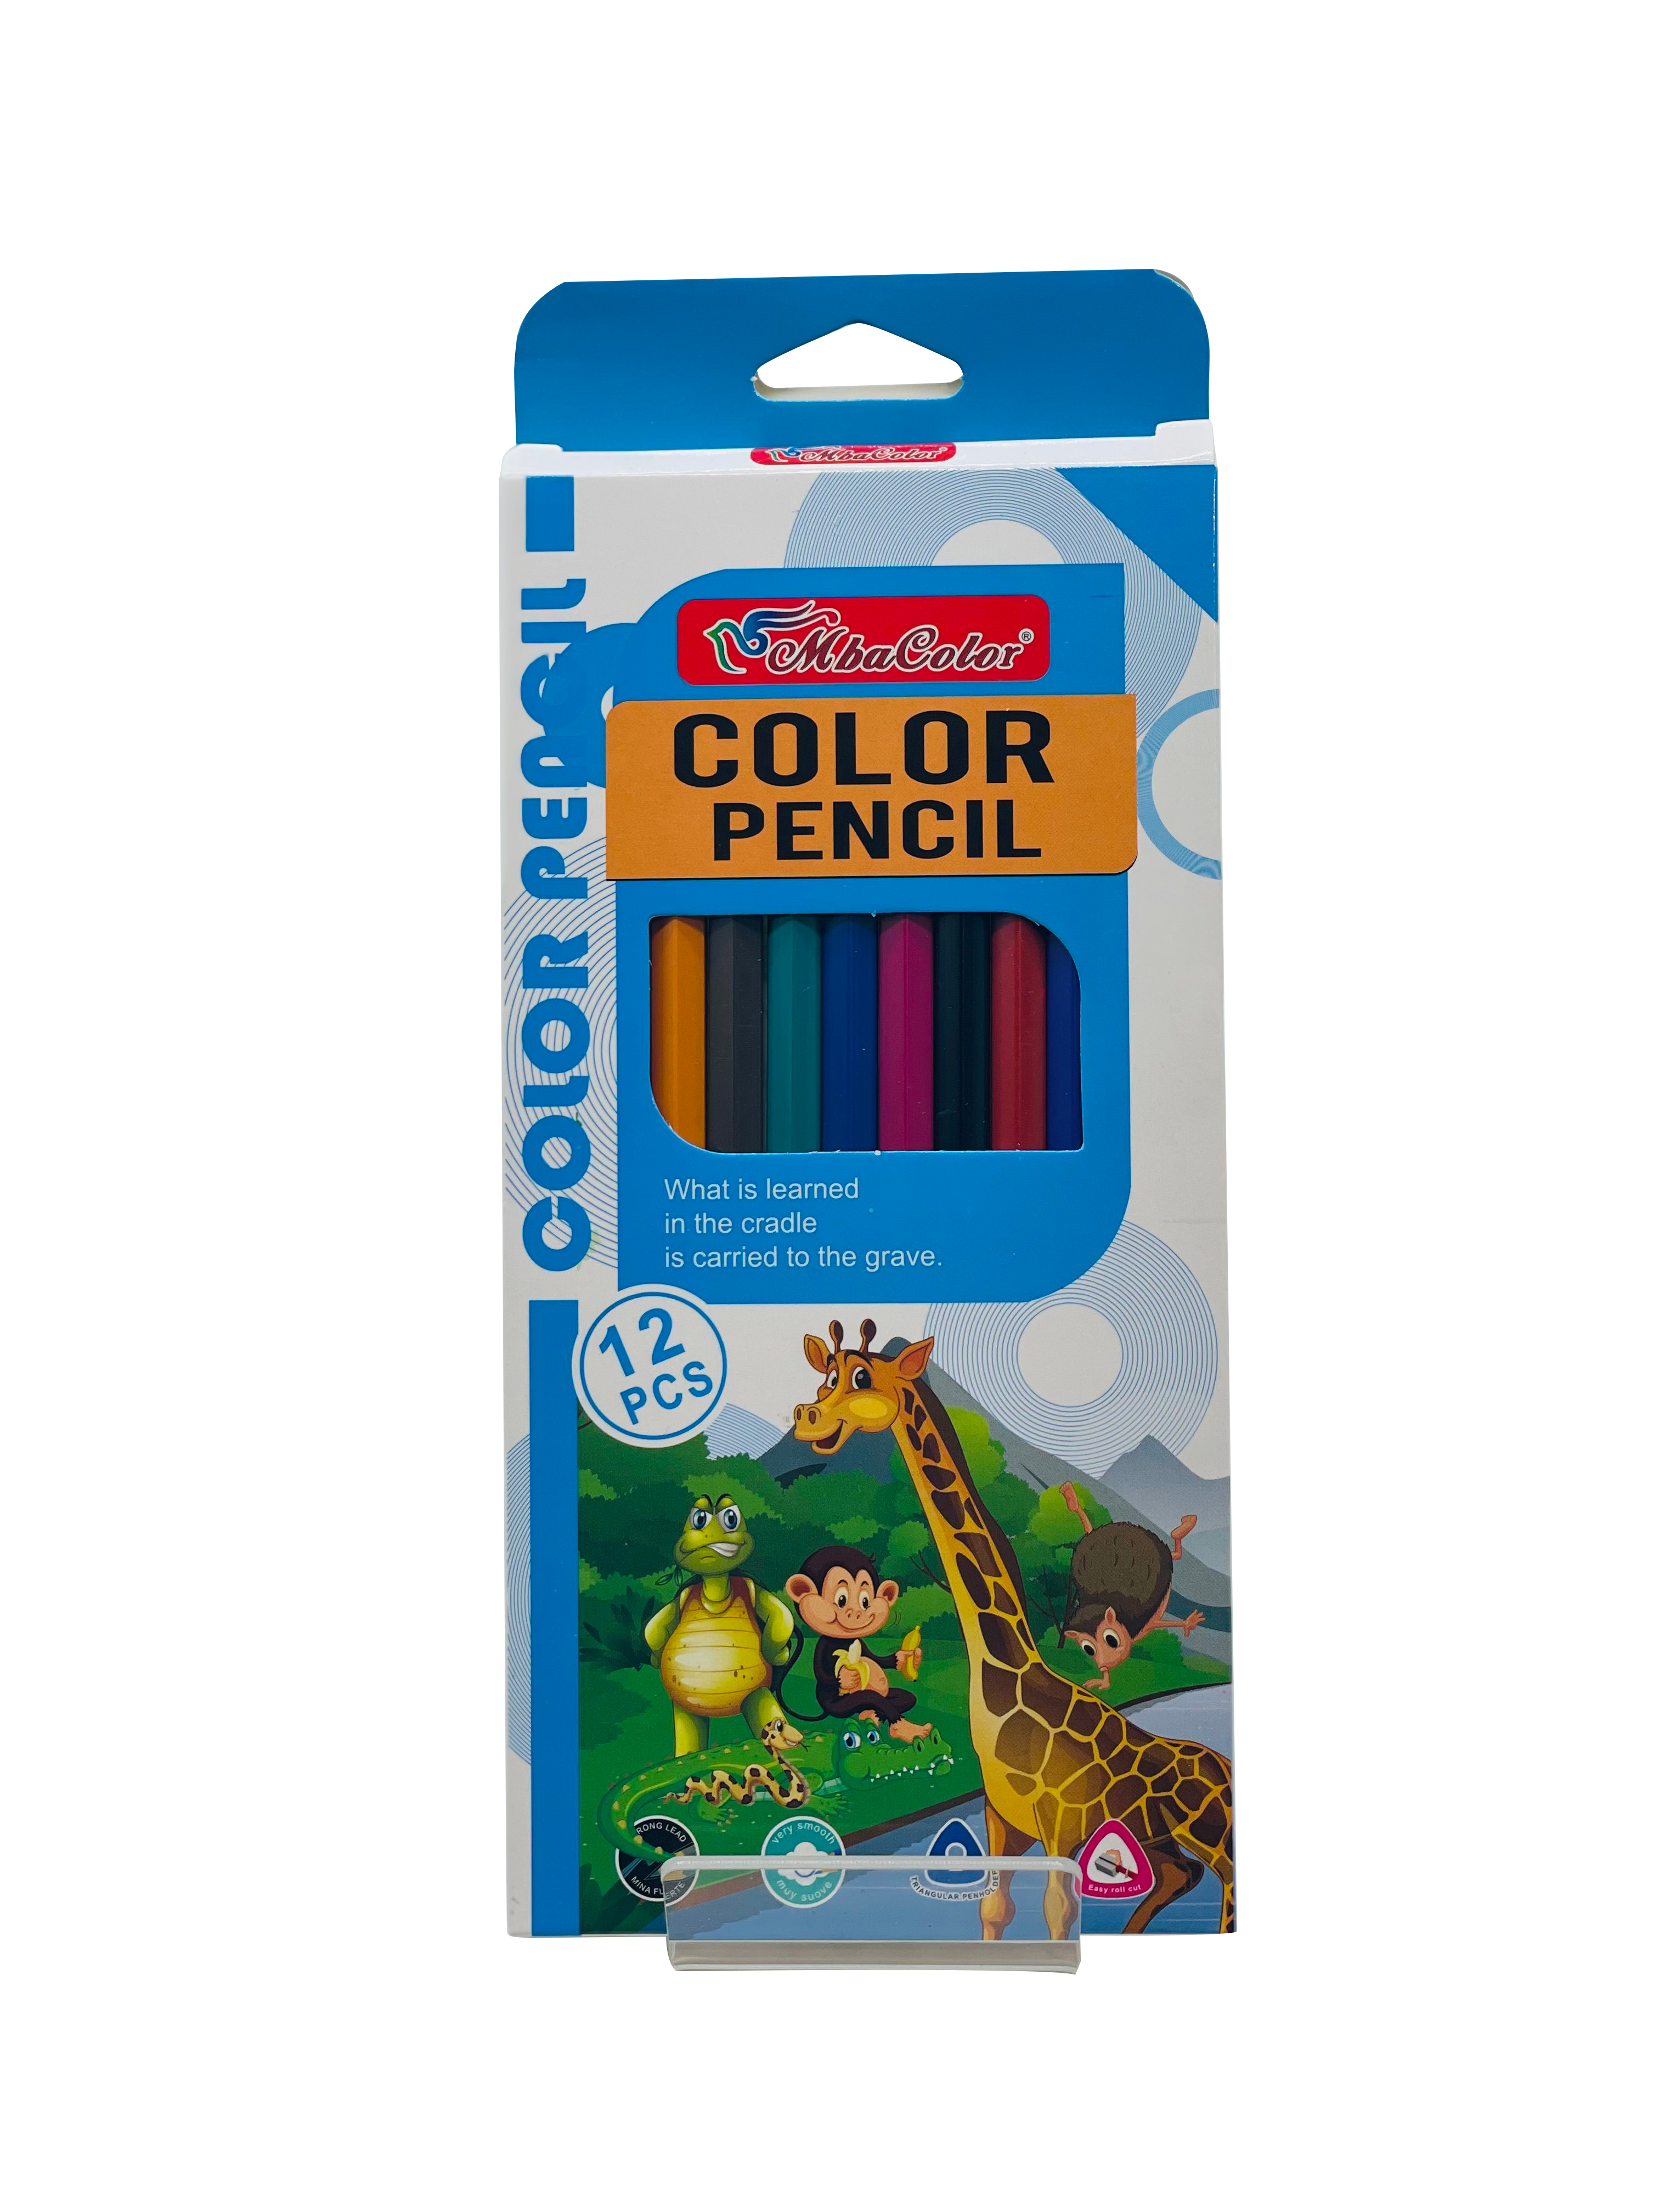 Jungle Book Color Pencils